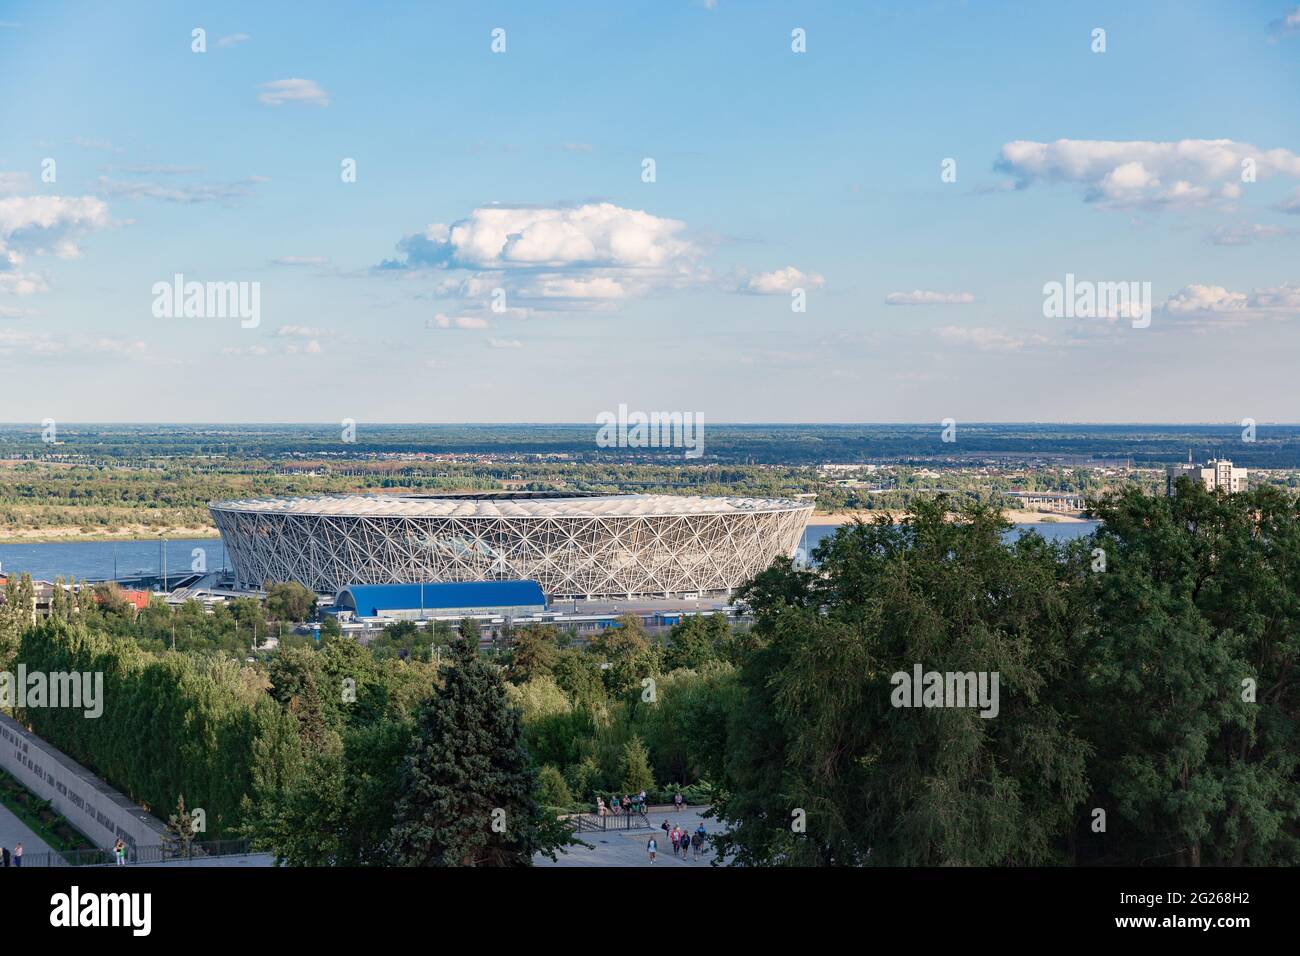 WOLGOGRAD, RUSSLAND - 16. AUGUST 2020: Die Wolgograd Arena ist ein Fußballstadion der internationalen Klasse, das in Wolgograd in der Nähe der Wolga für die FIFA 2018 gebaut wurde Stockfoto